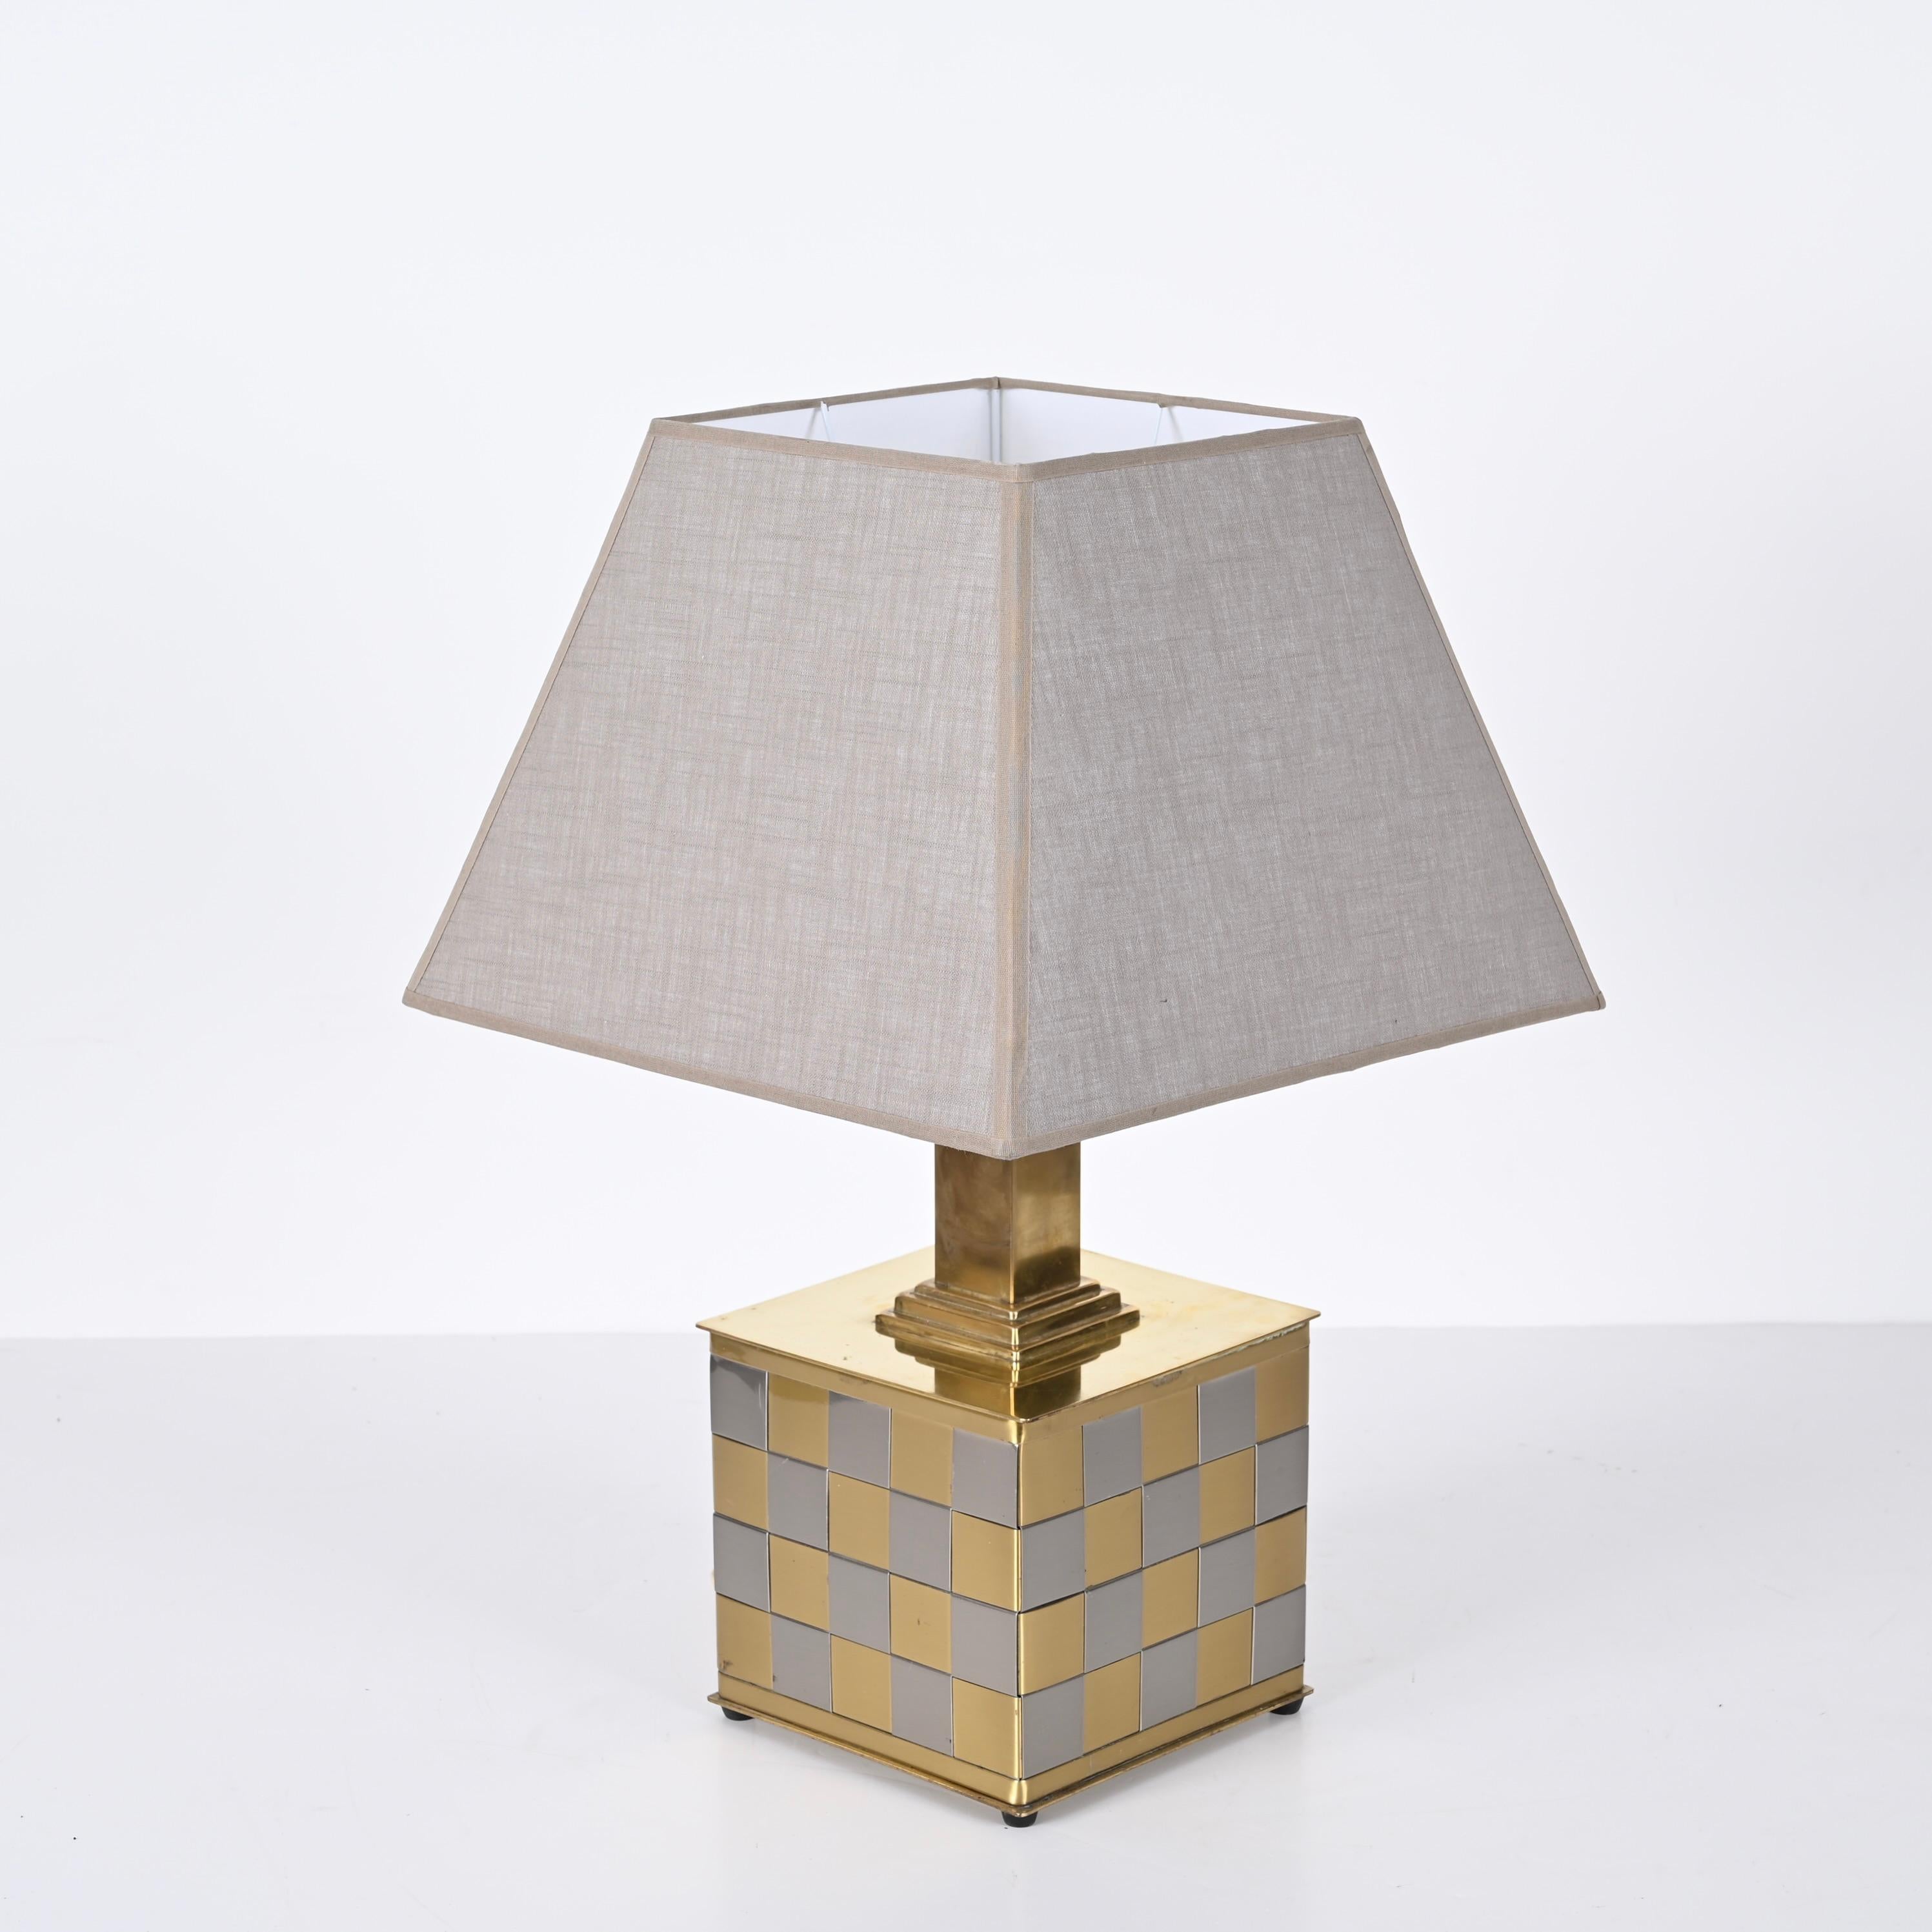 Superbe lampe de table en forme de cube en laiton et chrome tressé, cet objet merveilleux a été conçu en Italie dans les années 70 dans le style de Willy Rizzo.
Le contraste entre le laiton et le chrome est tout simplement étonnant et enrichit la